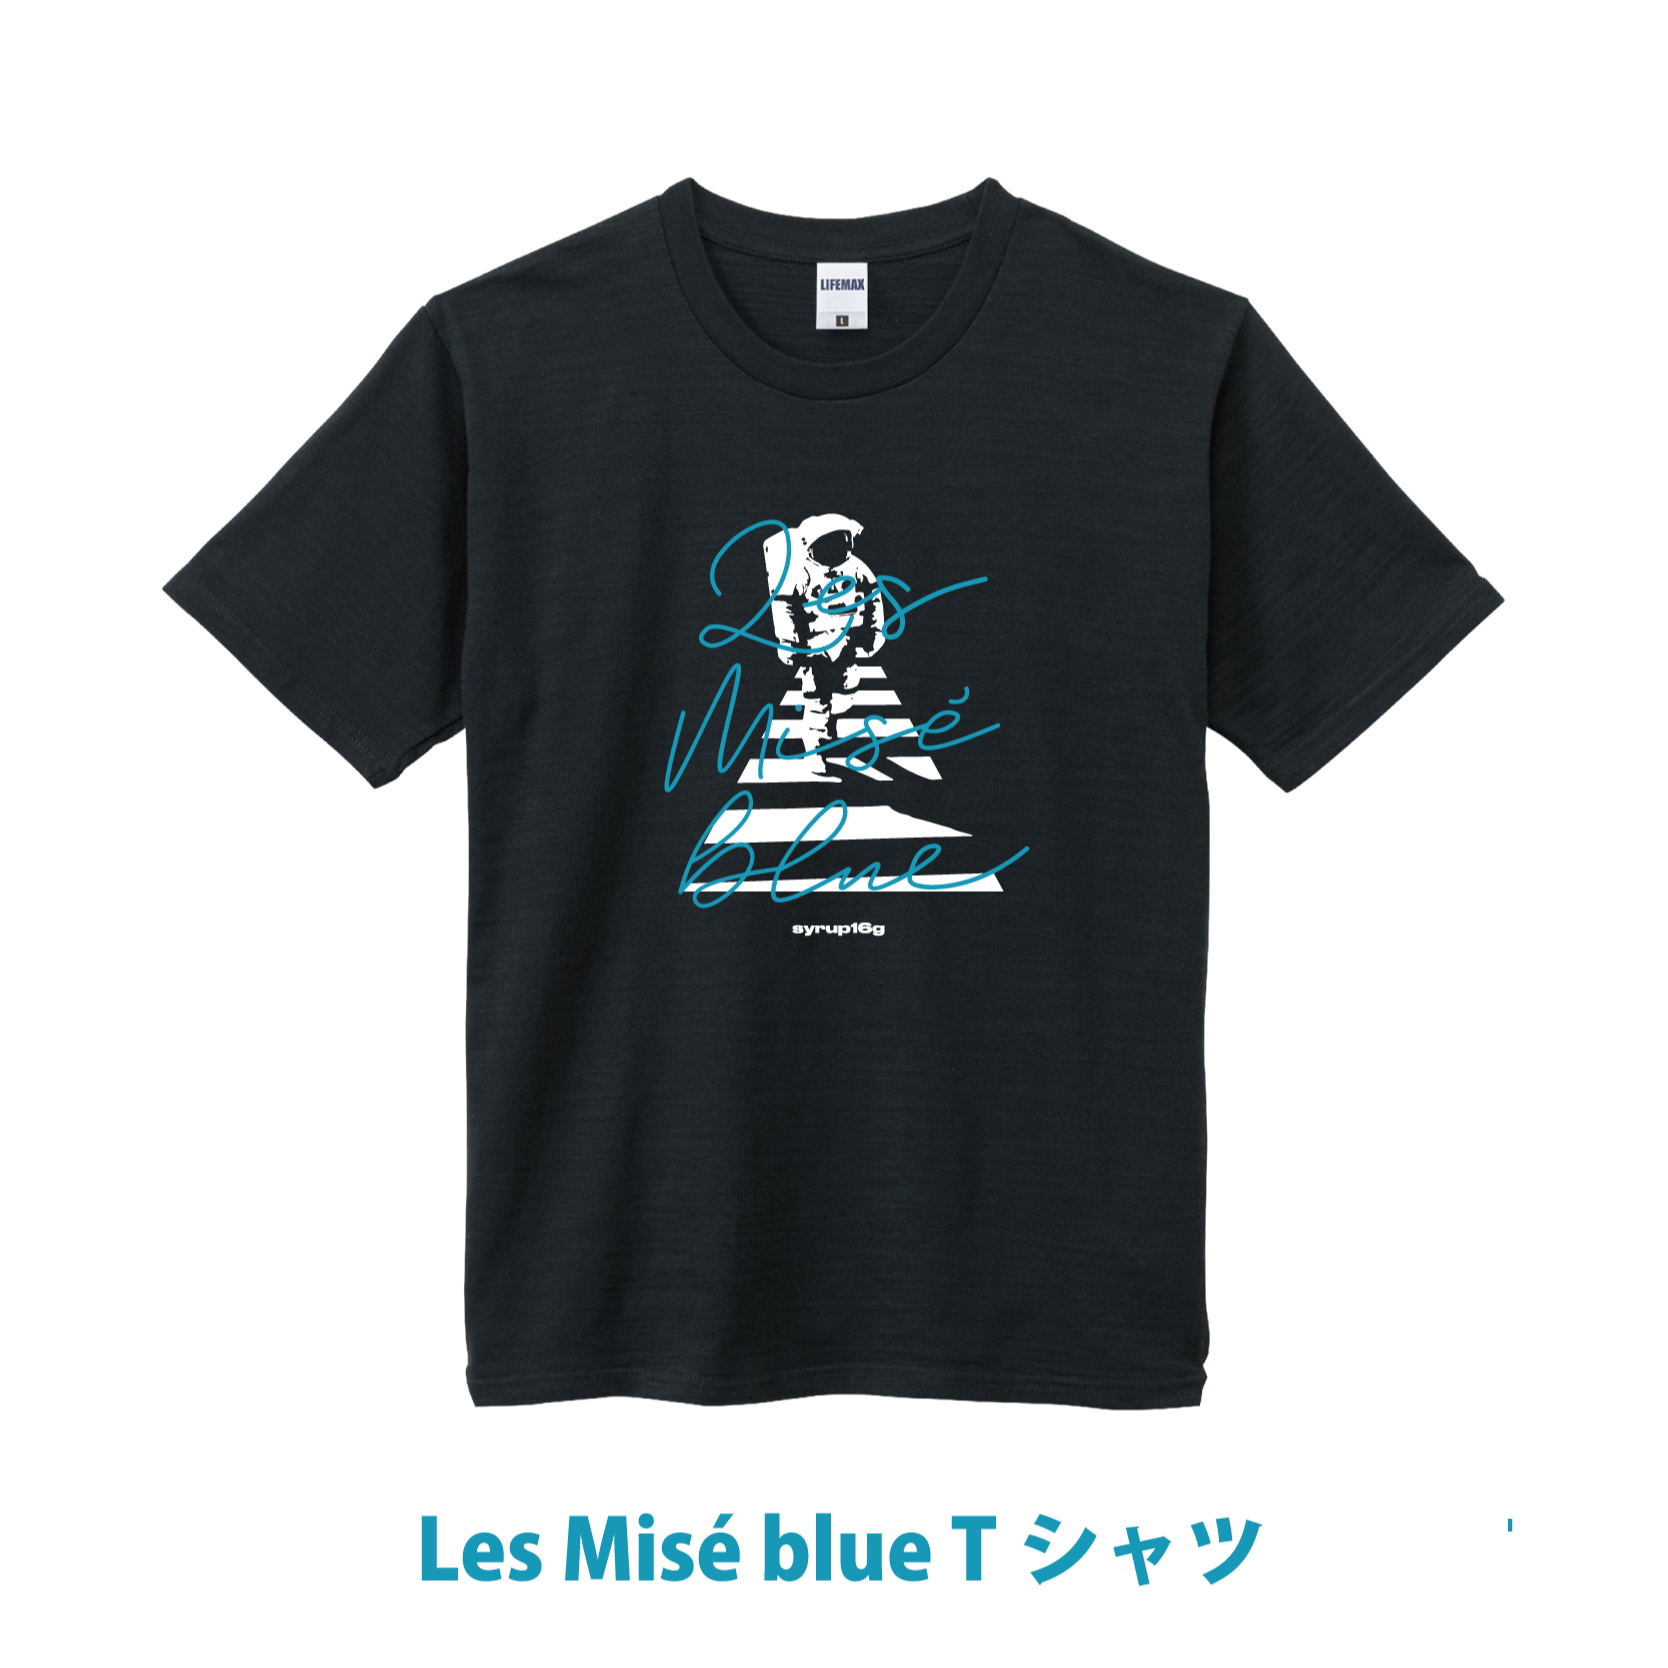 Les Misé blue Tシャツ